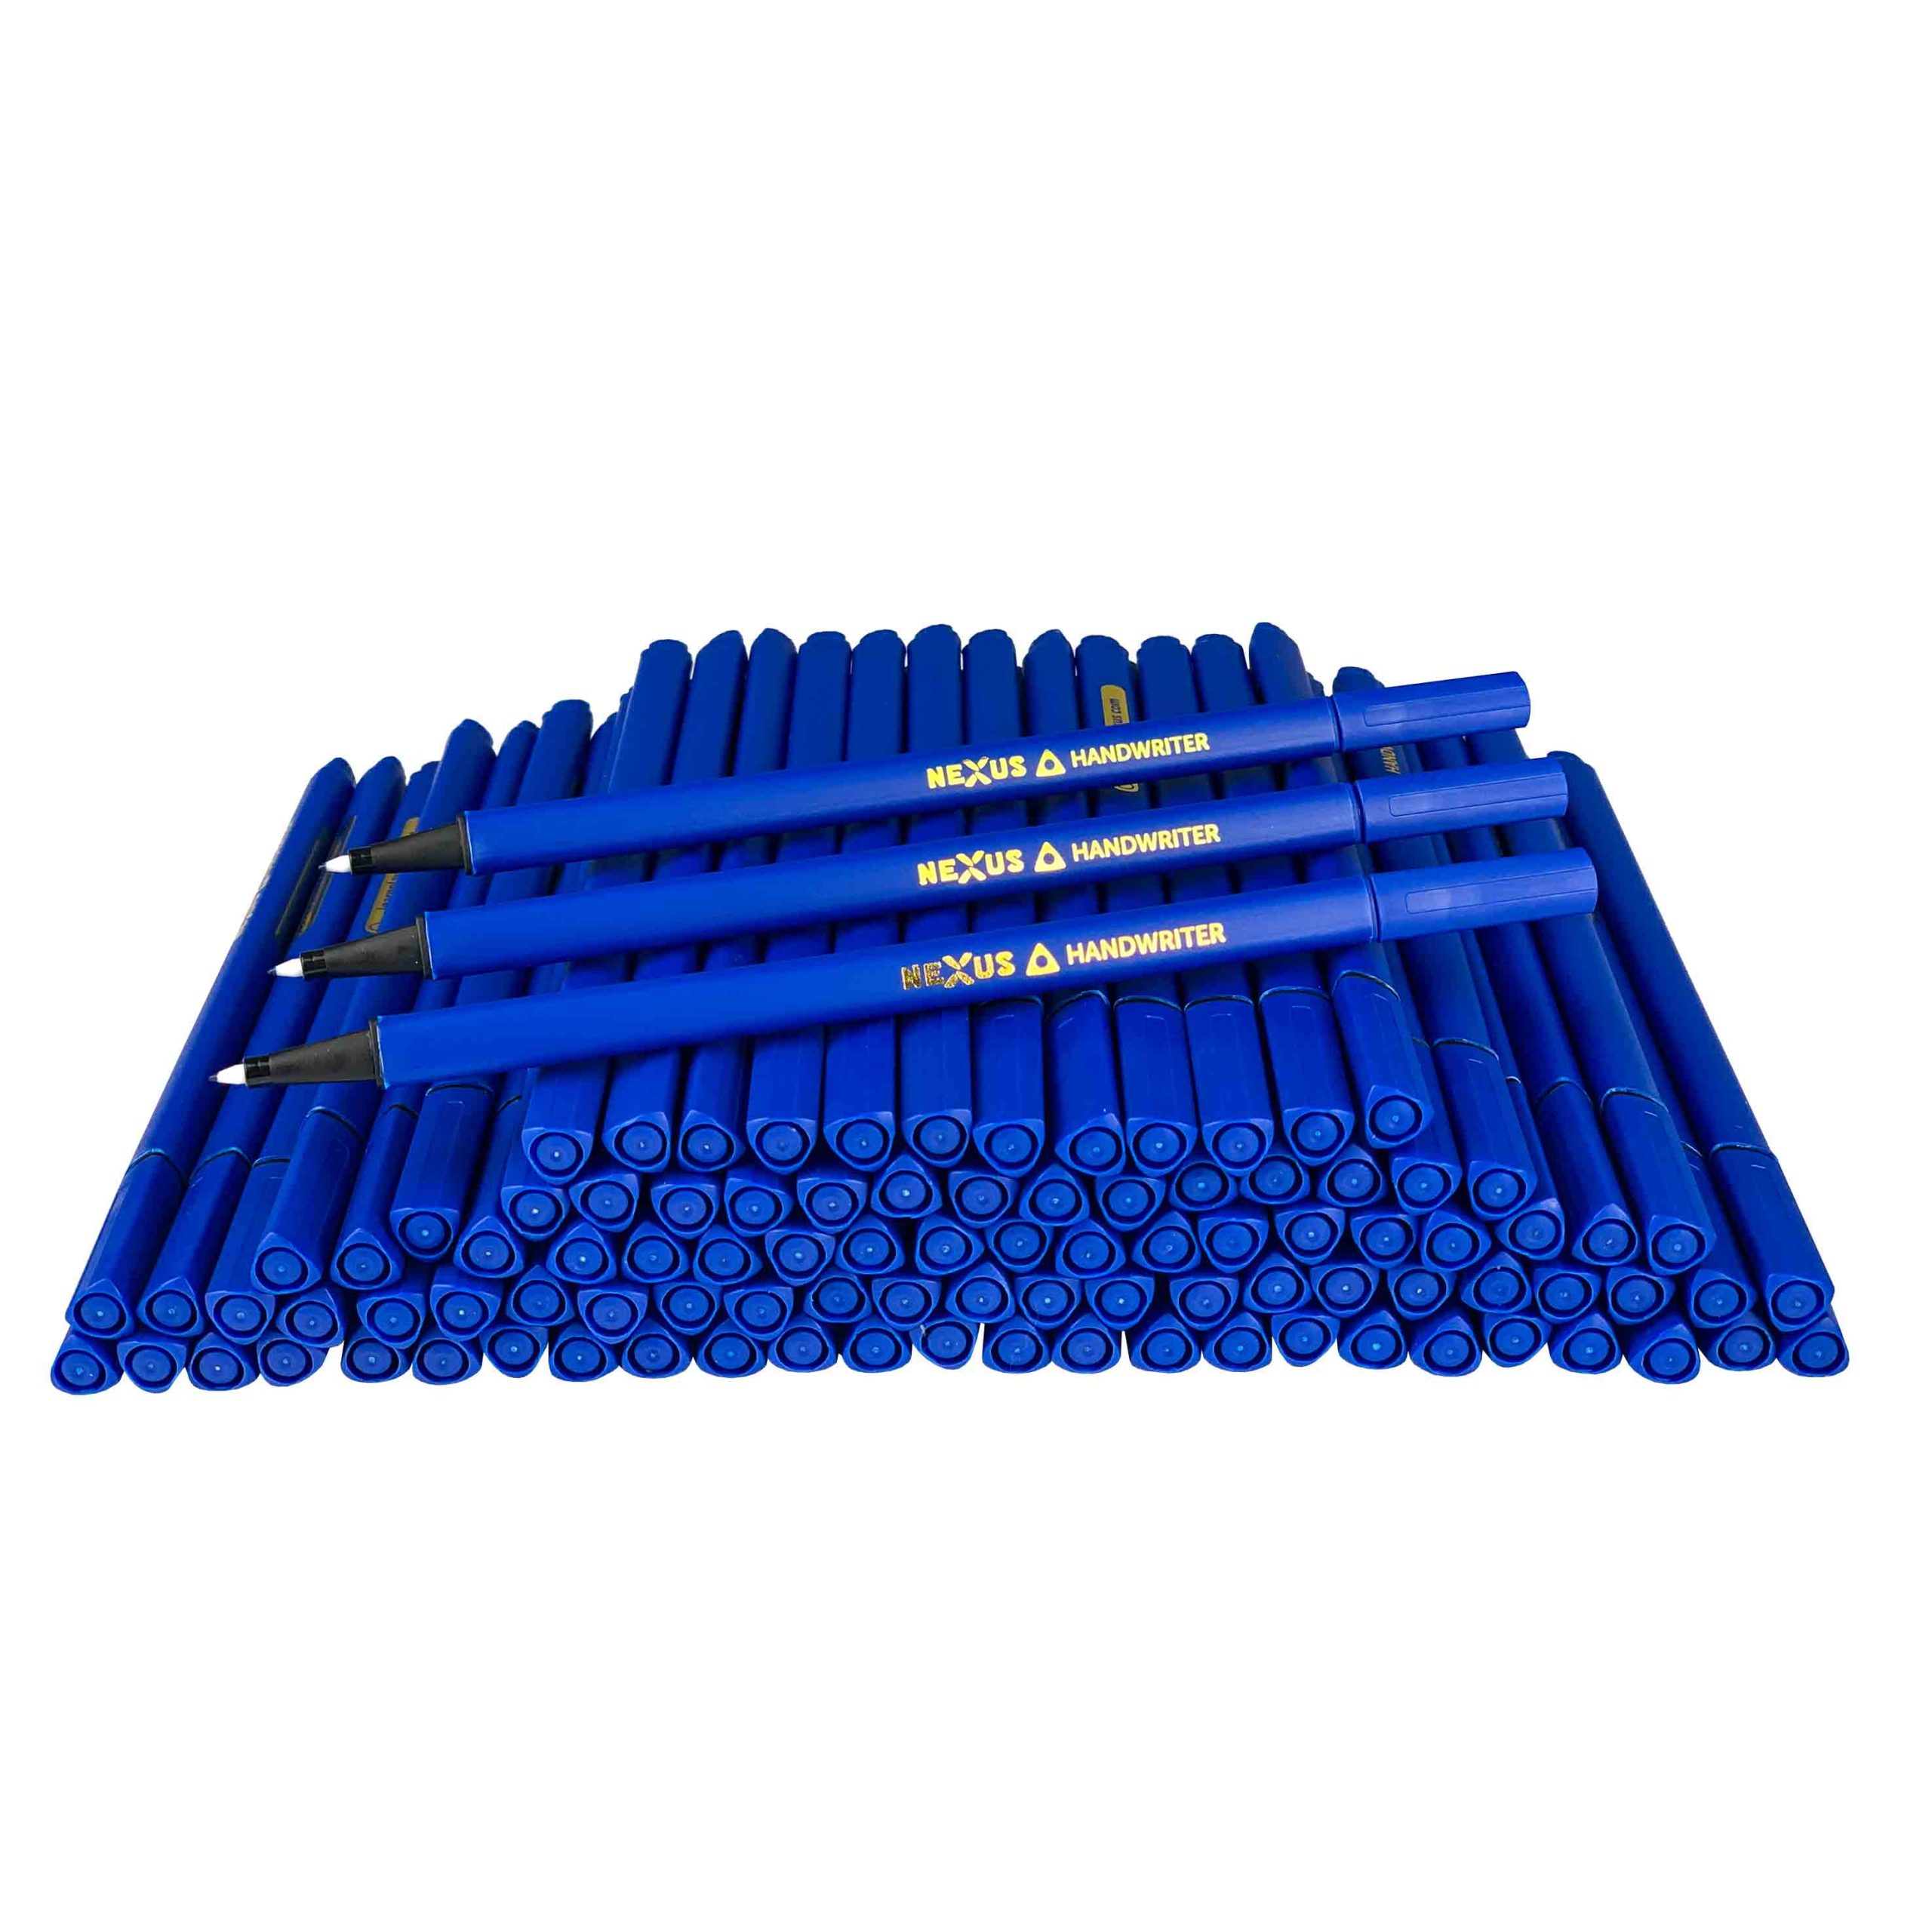 Nexus Triangular Handwriter Pens 166mm (Blue) Box of 100 pcs